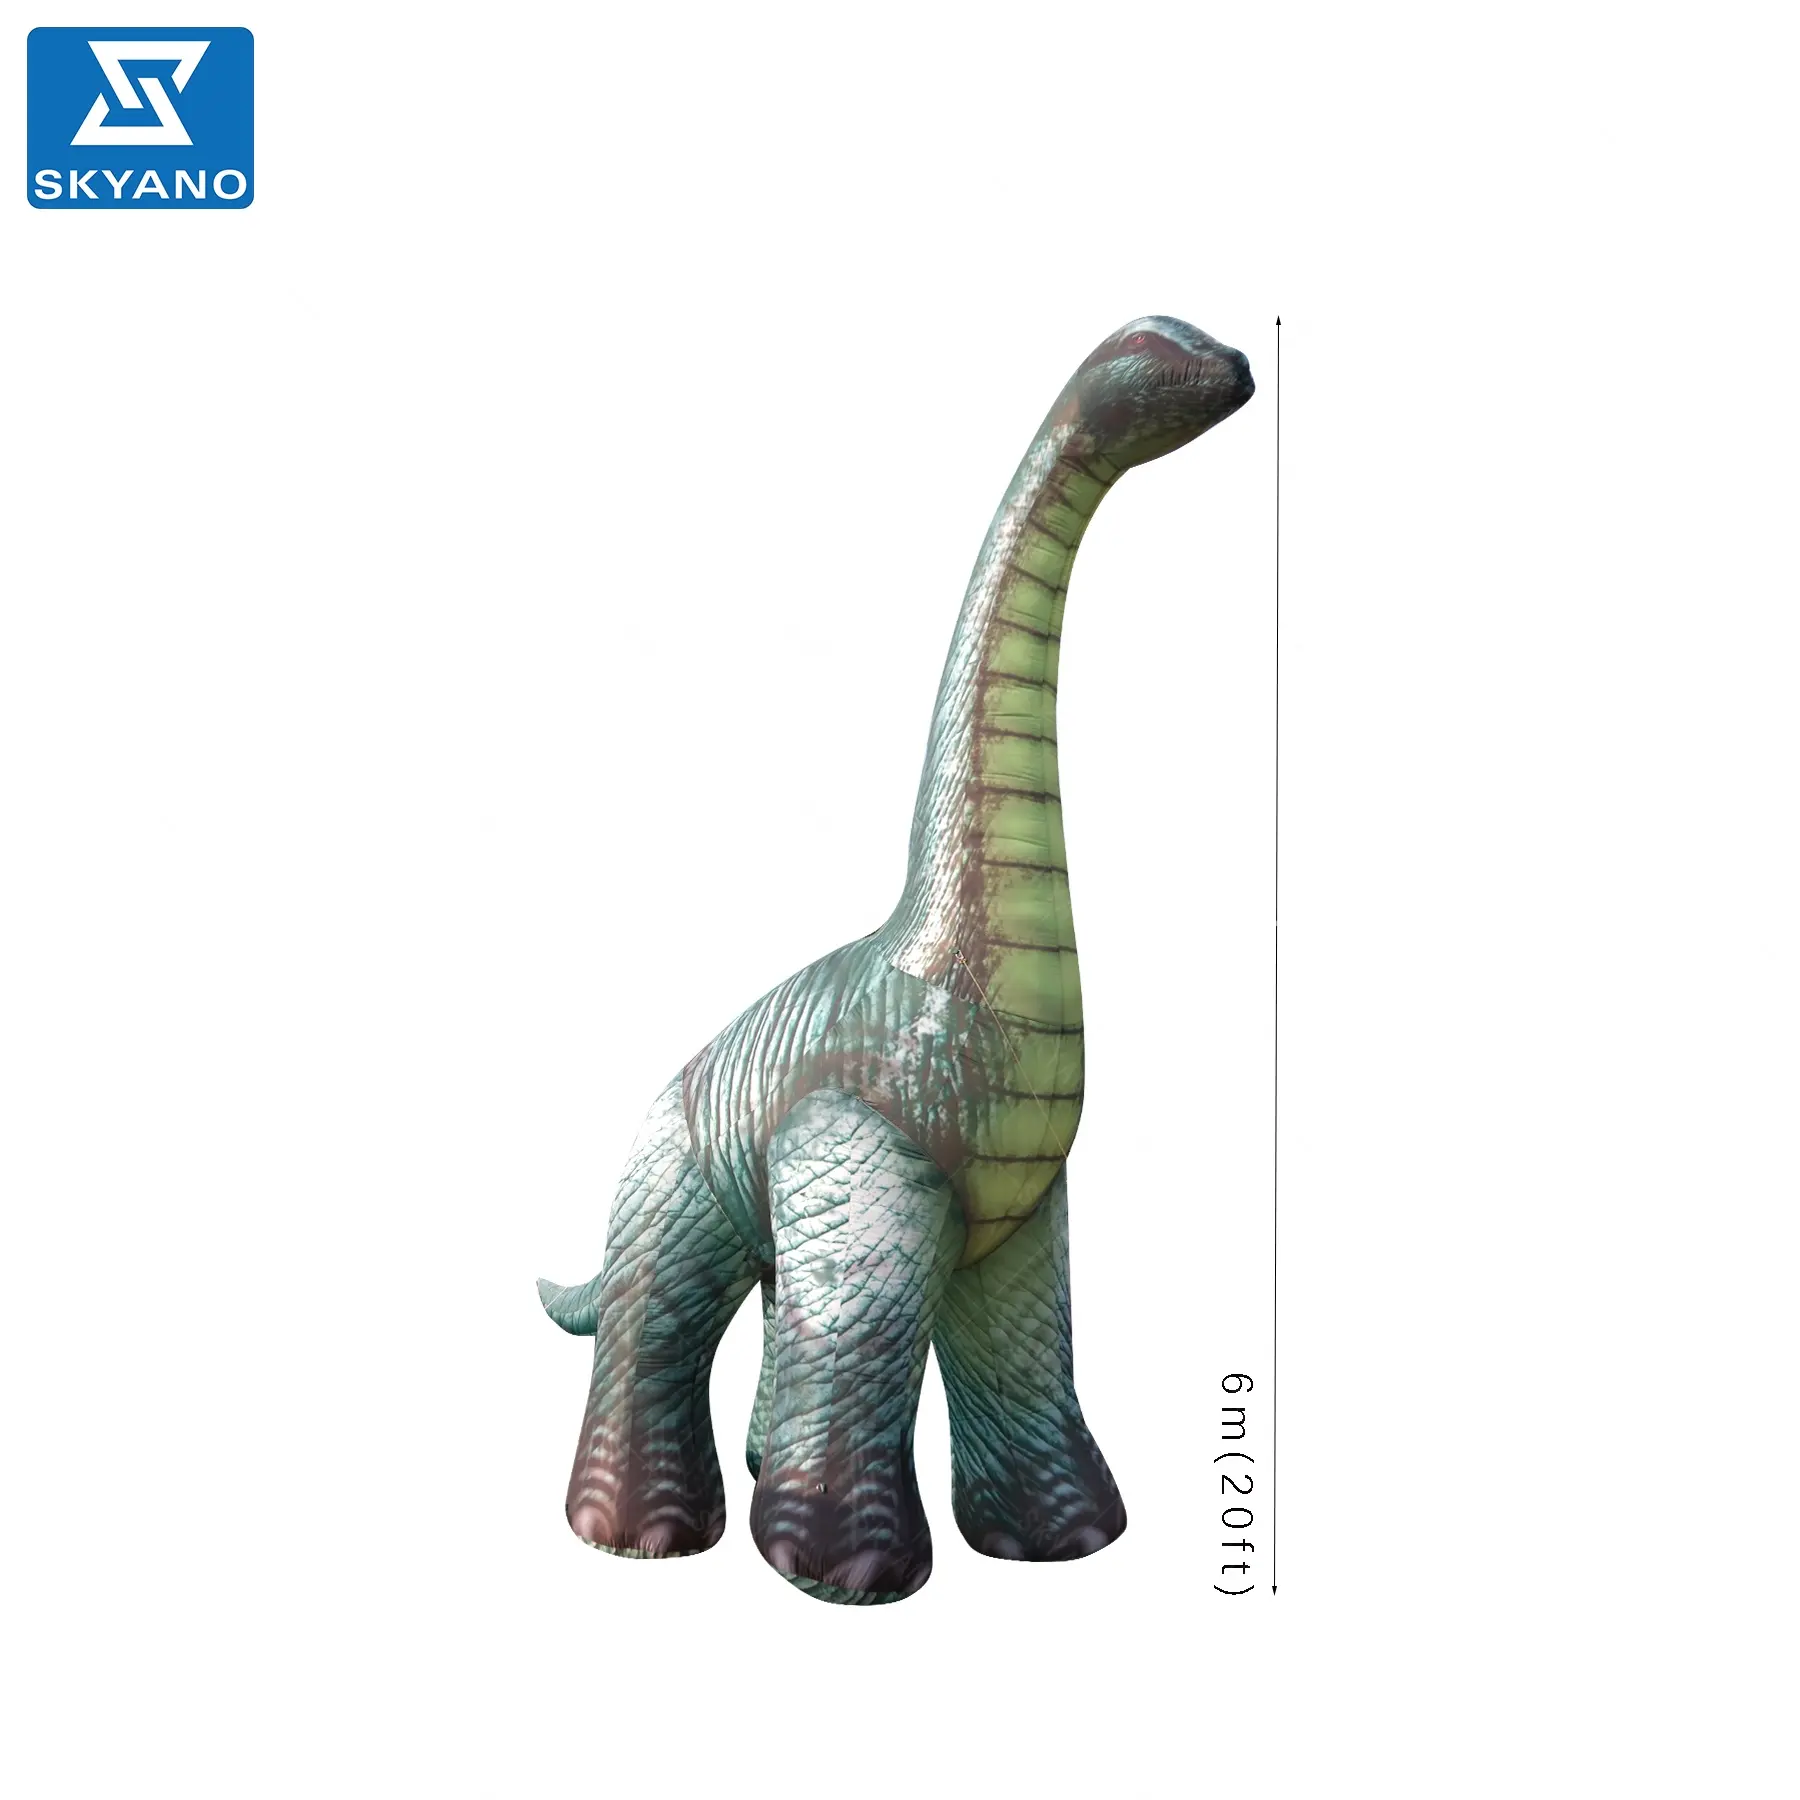 Modelo de dragón bobinado inflable gigante, modelo de dinosaurio inflable